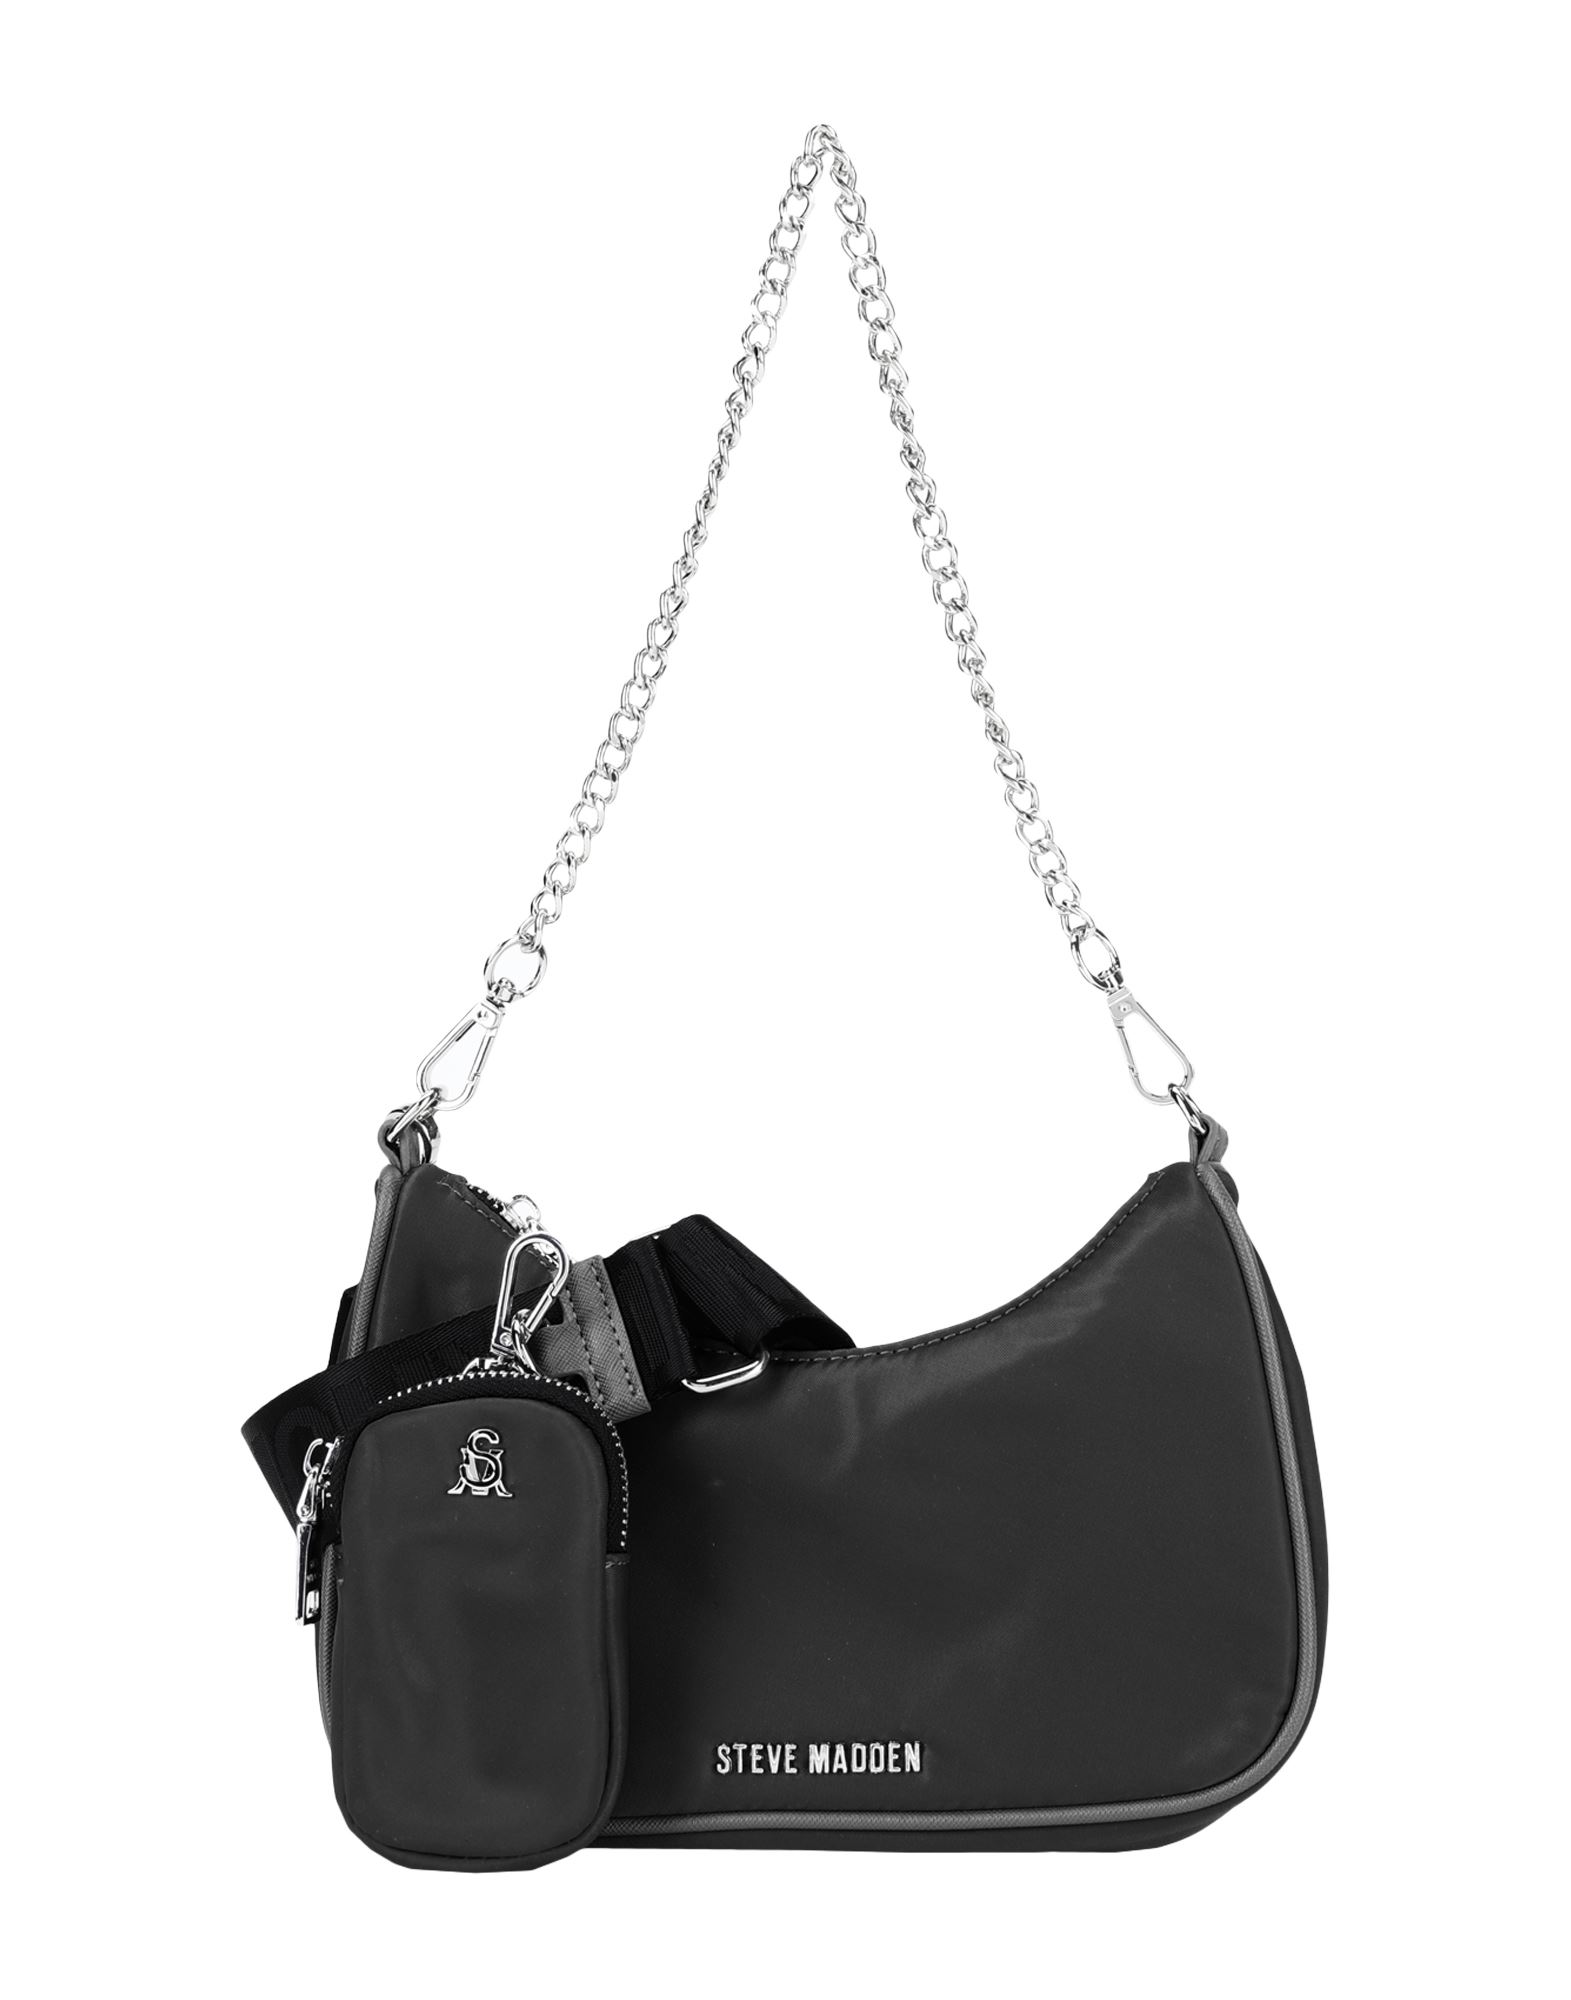 BVITAL bag. Black or white? Just take them both. Steve Madden Central Park  Mall, L1. #centralparkmall #stevemaddenID…